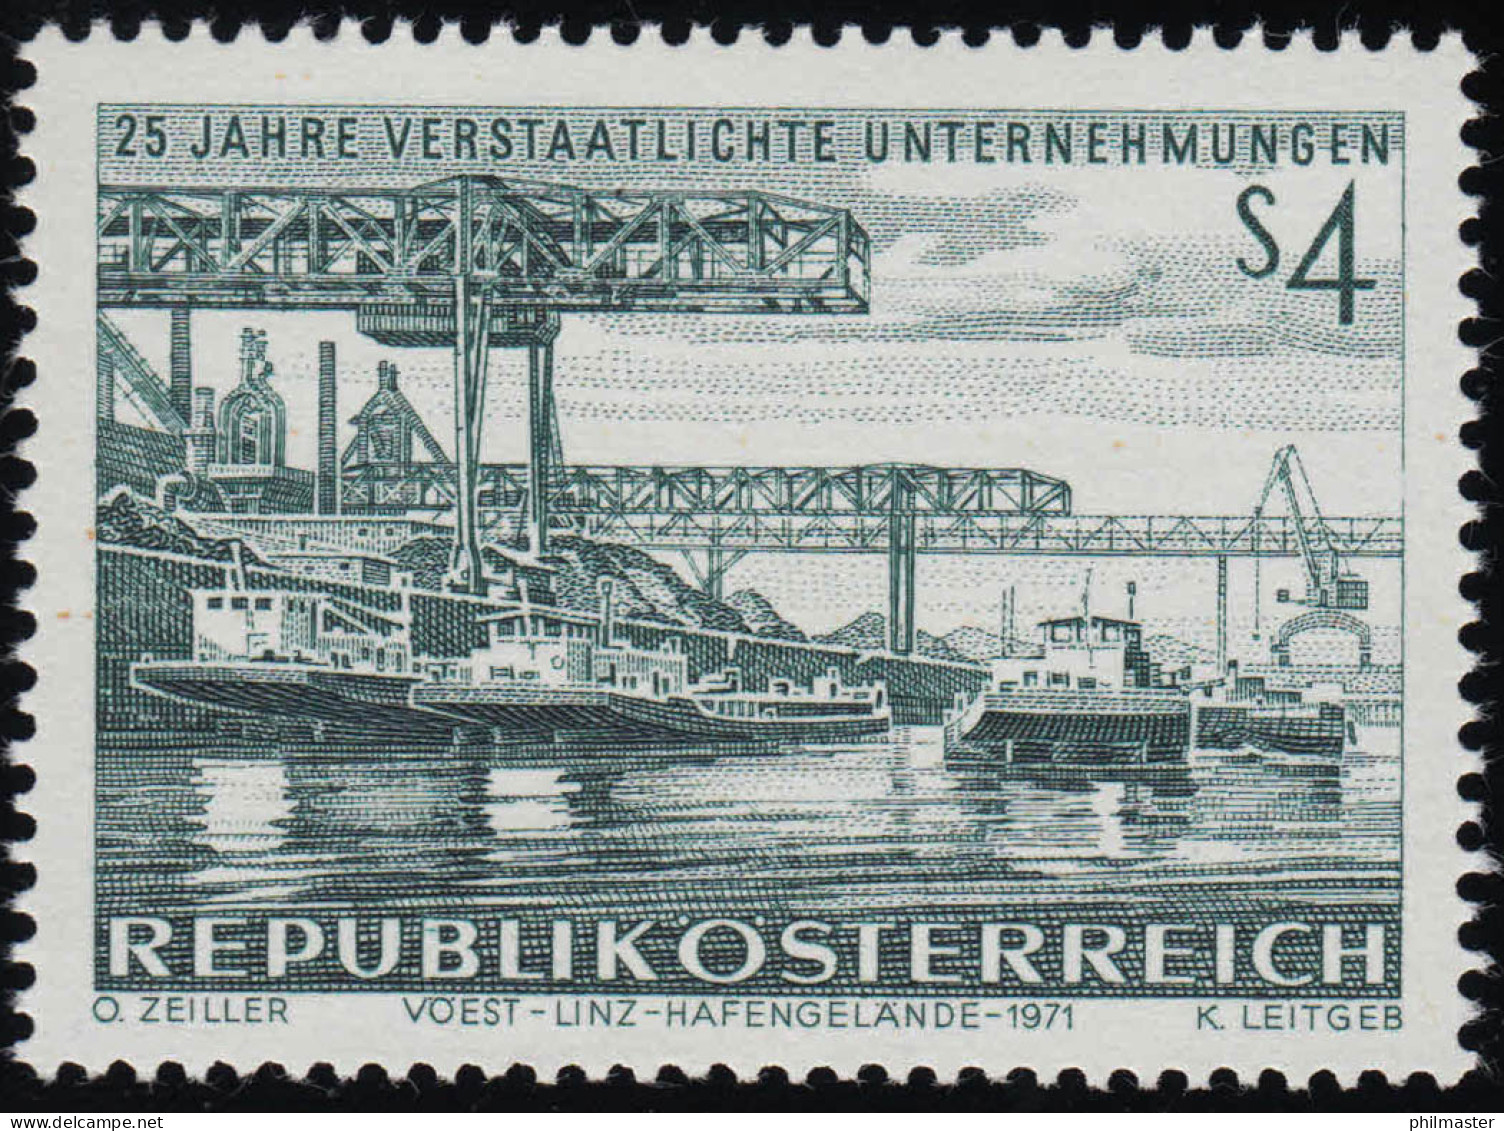 1375 25 J. Verstaatl. Unternehmen, Eisen & Stahlwerk Linz Hafengelände, 4 S, ** - Unused Stamps